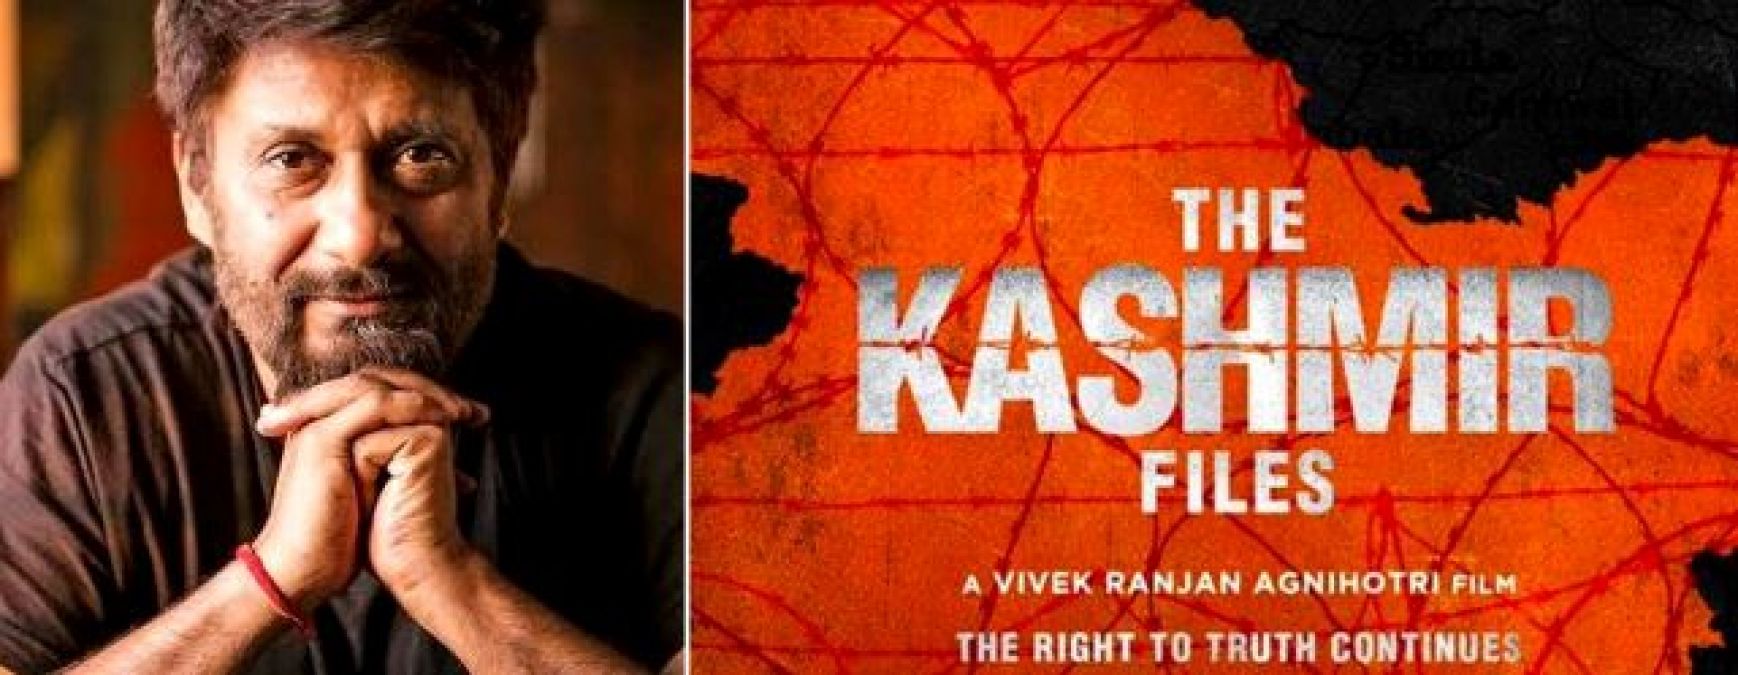 'द कश्मीर फाइल्स' के चलते मुश्किल में फंसे विवेक रंजन अग्निहोत्री, मिल रही जान से मारने की धमकियां